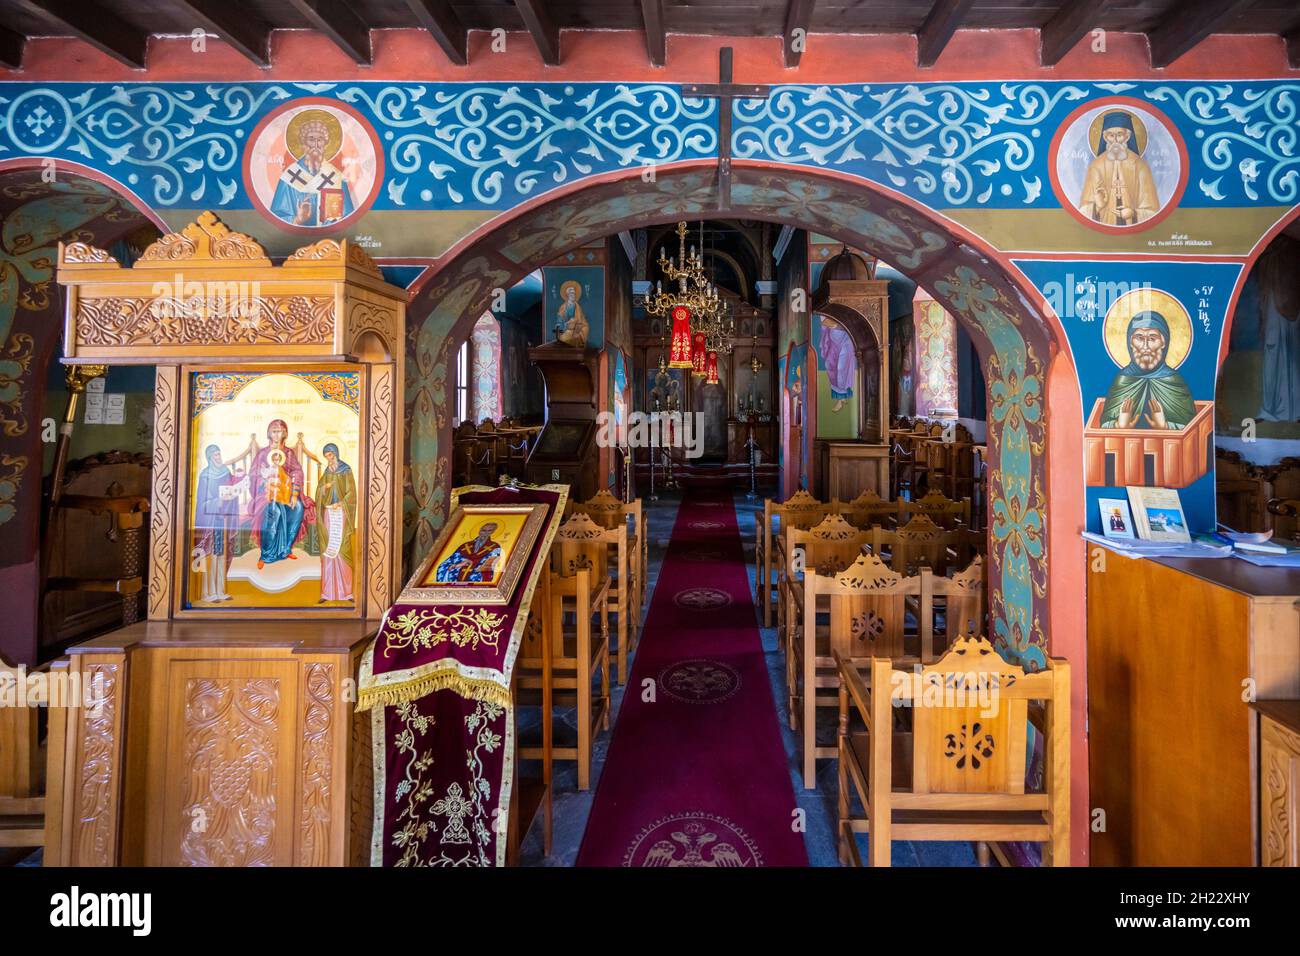 Interior of a church, Kimissis tis Theotokou, Greek Orthodox Church of Zia, Kos, Dodecanese, Greece Stock Photo